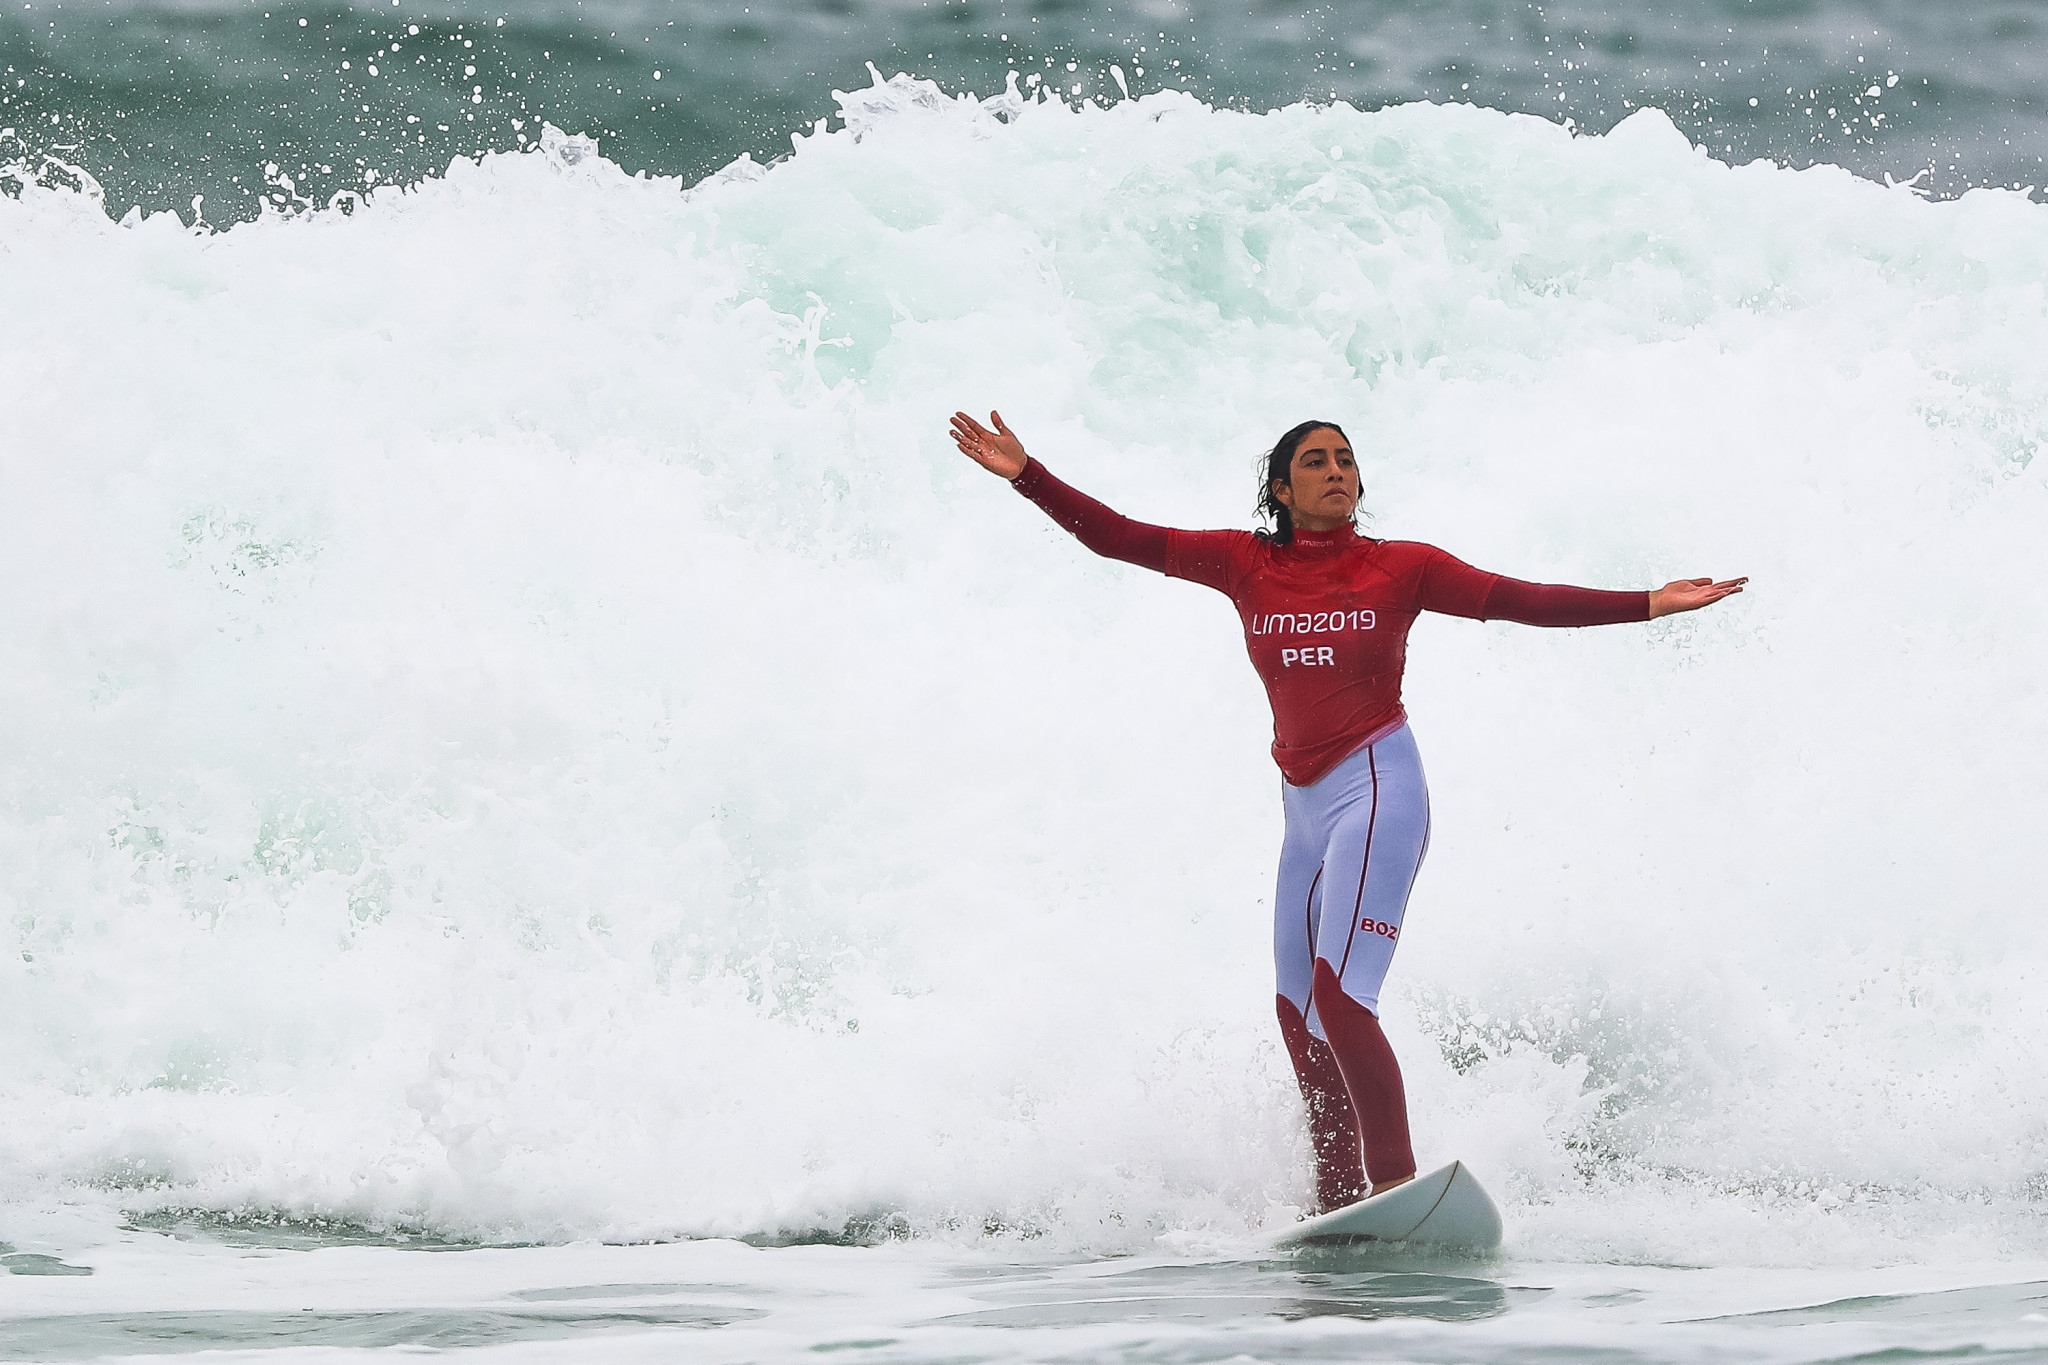 La campeona de los Juegos Panamericanos 2019, Daniella Rosas de Perú, dice que está satisfecha con su progreso hasta ahora en los World Surfing Games de este año, donde está potencialmente a dos rondas de la final © Getty Images